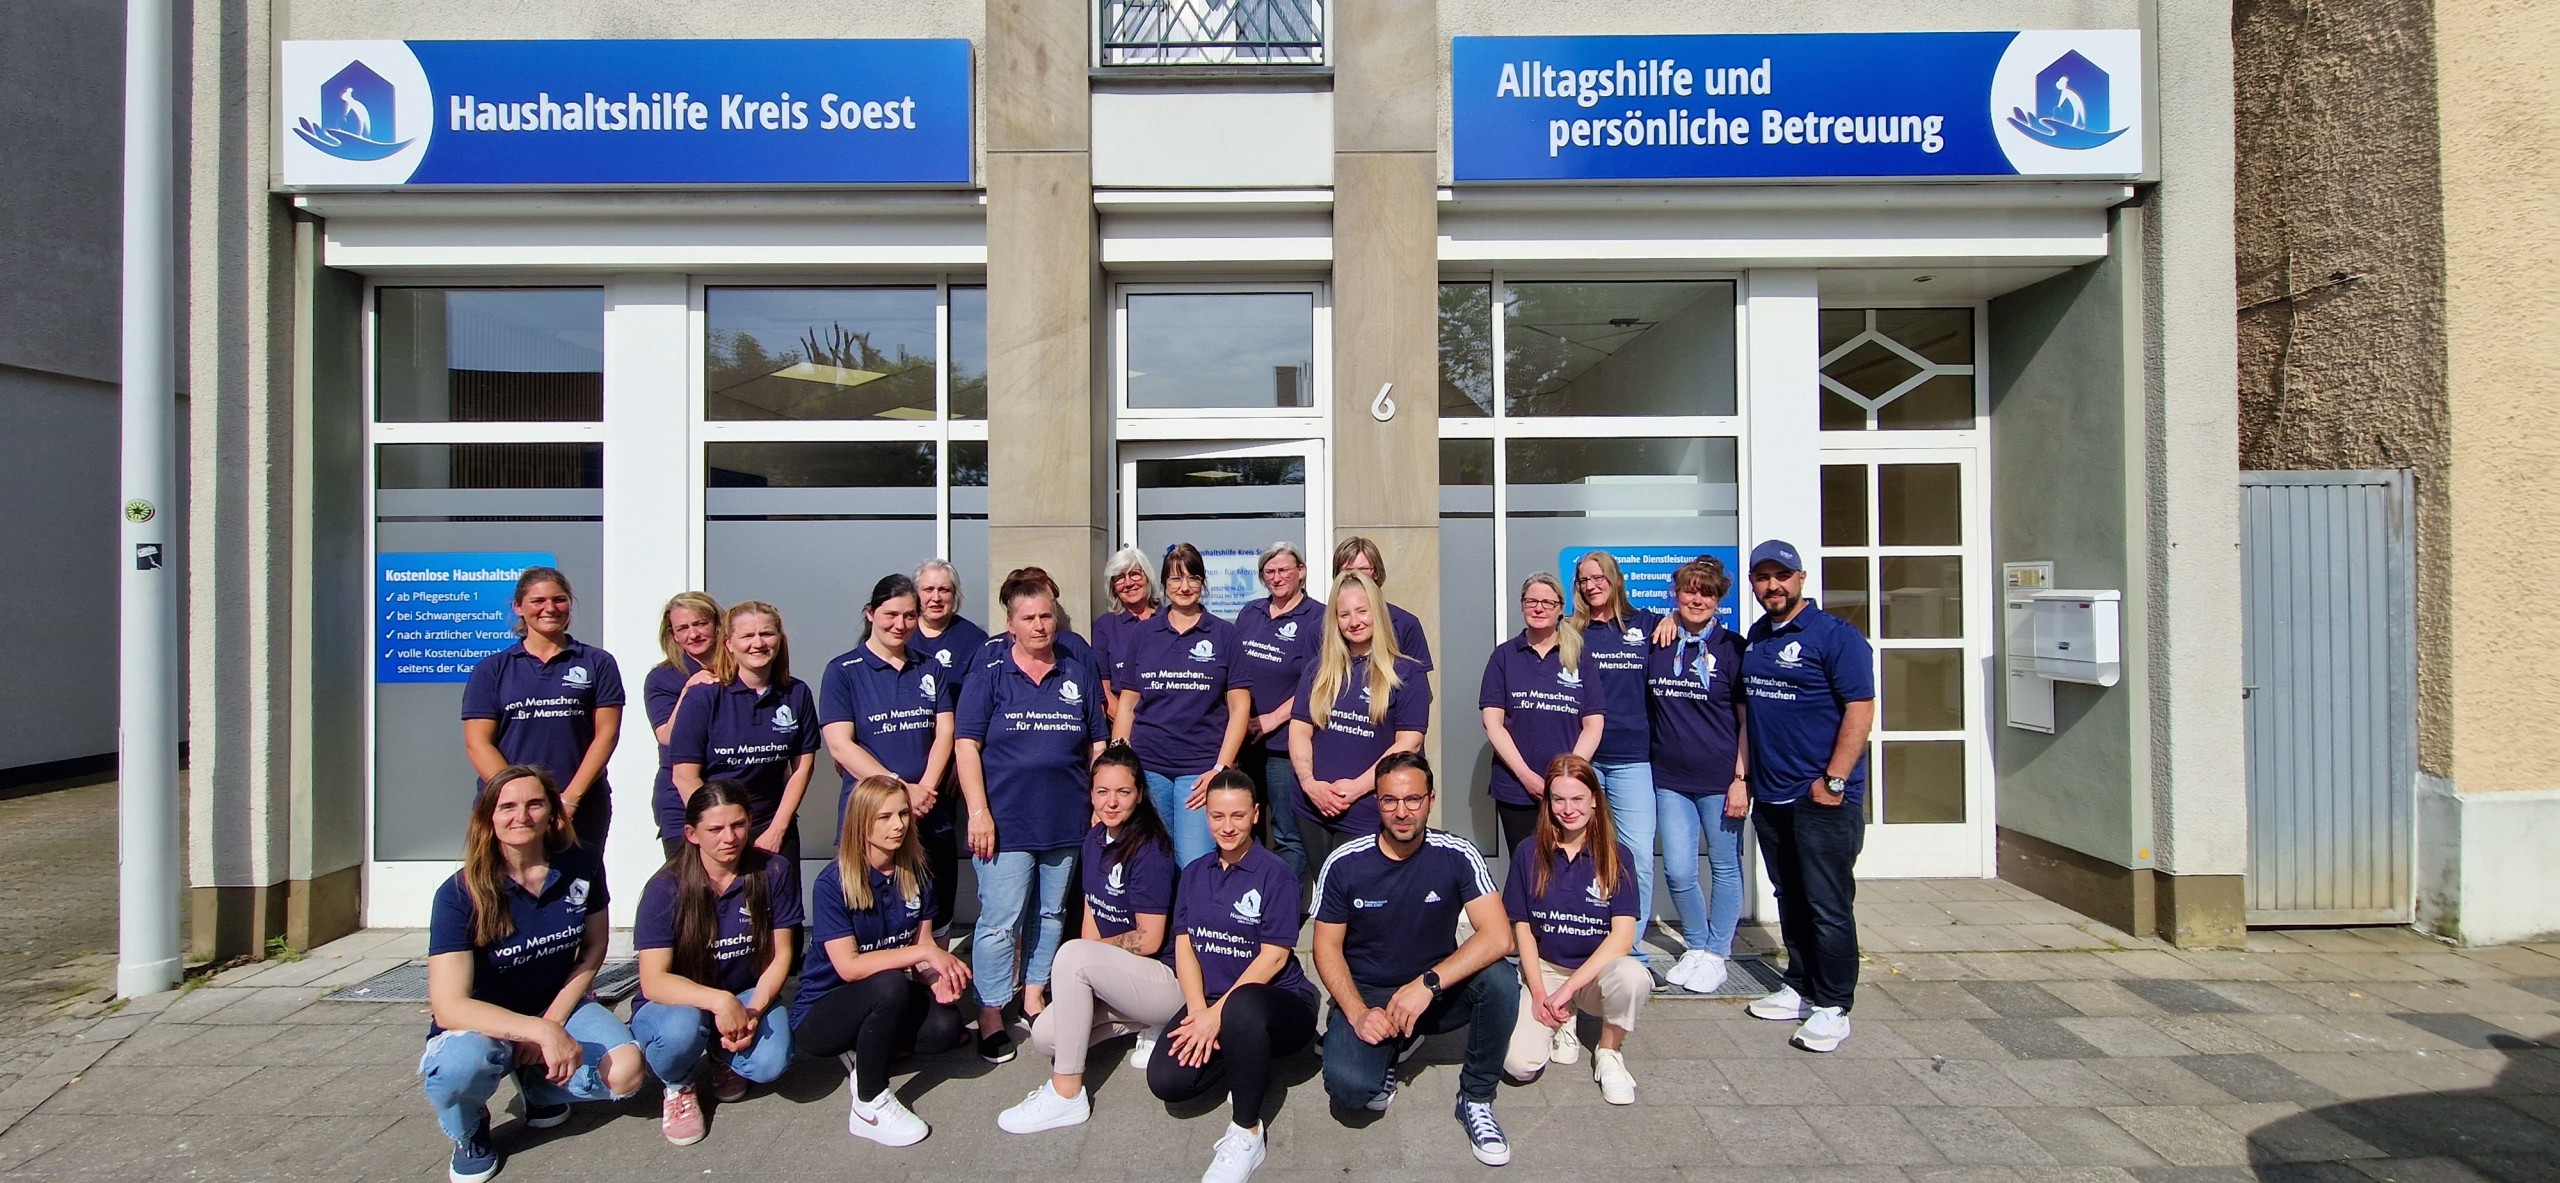 Haushaltshilfe Kreis Soest Teamfoto